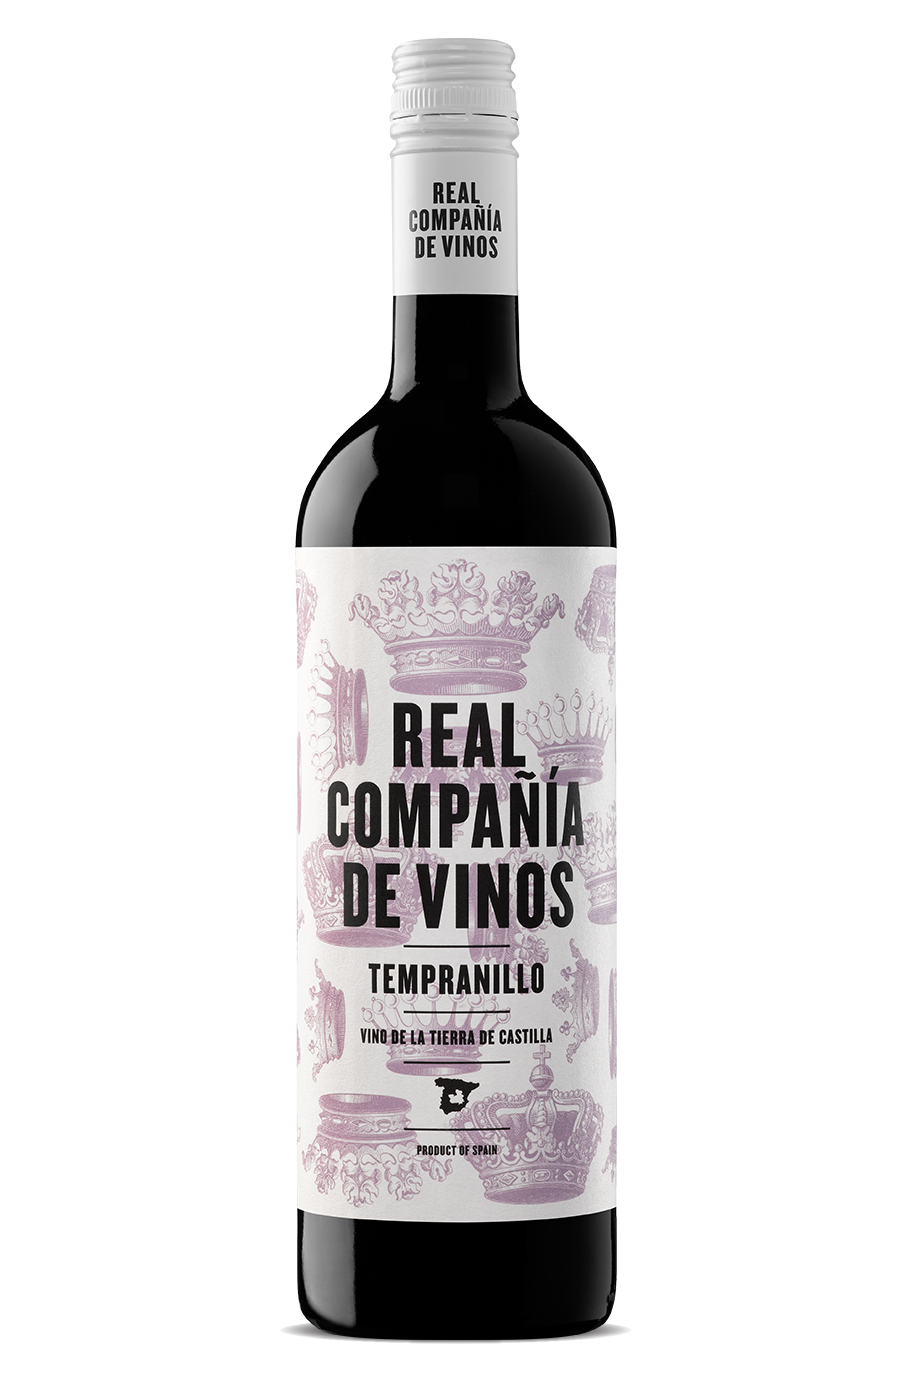 Real Compania de Vinos Tempranillo 2019